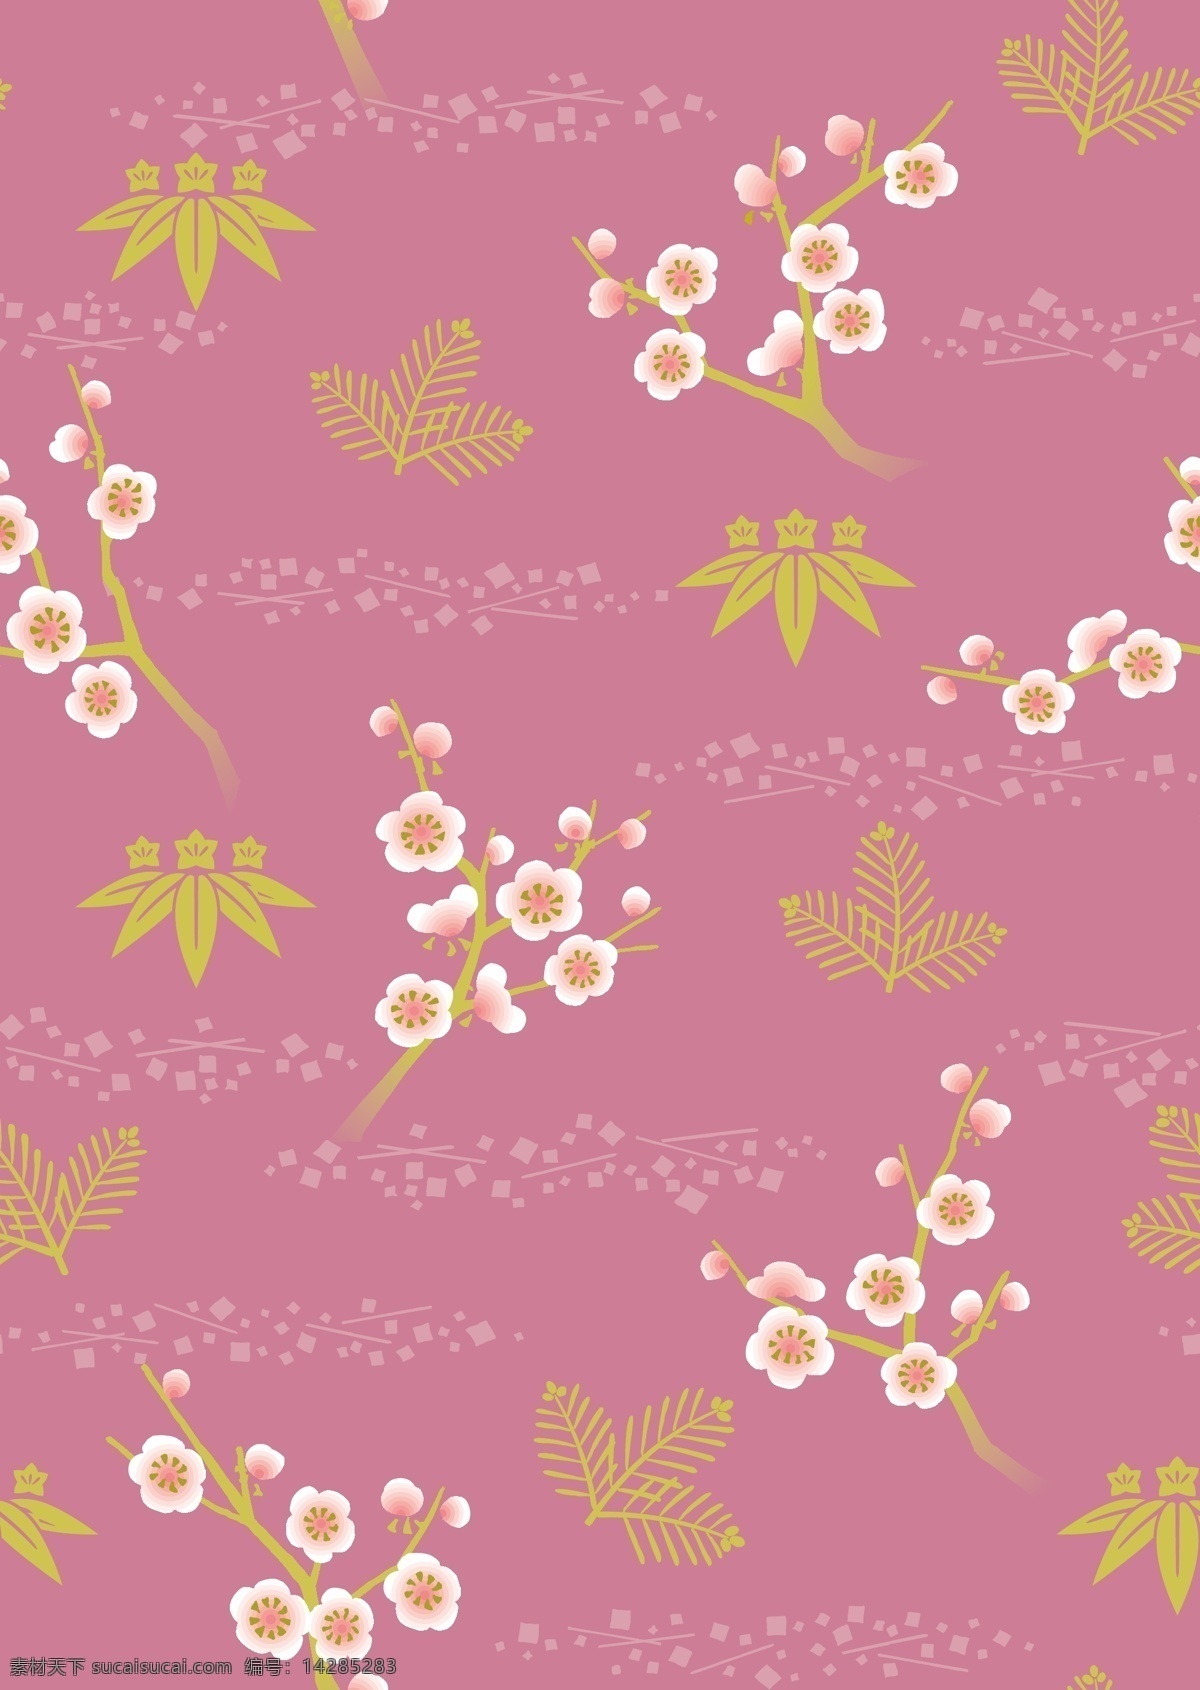 日本图案 传统纹样 友禅纹样 和风 和服图案 服装艺术 古典纹样 东方艺术 植物花卉 矢量花型 文化艺术 绘画书法